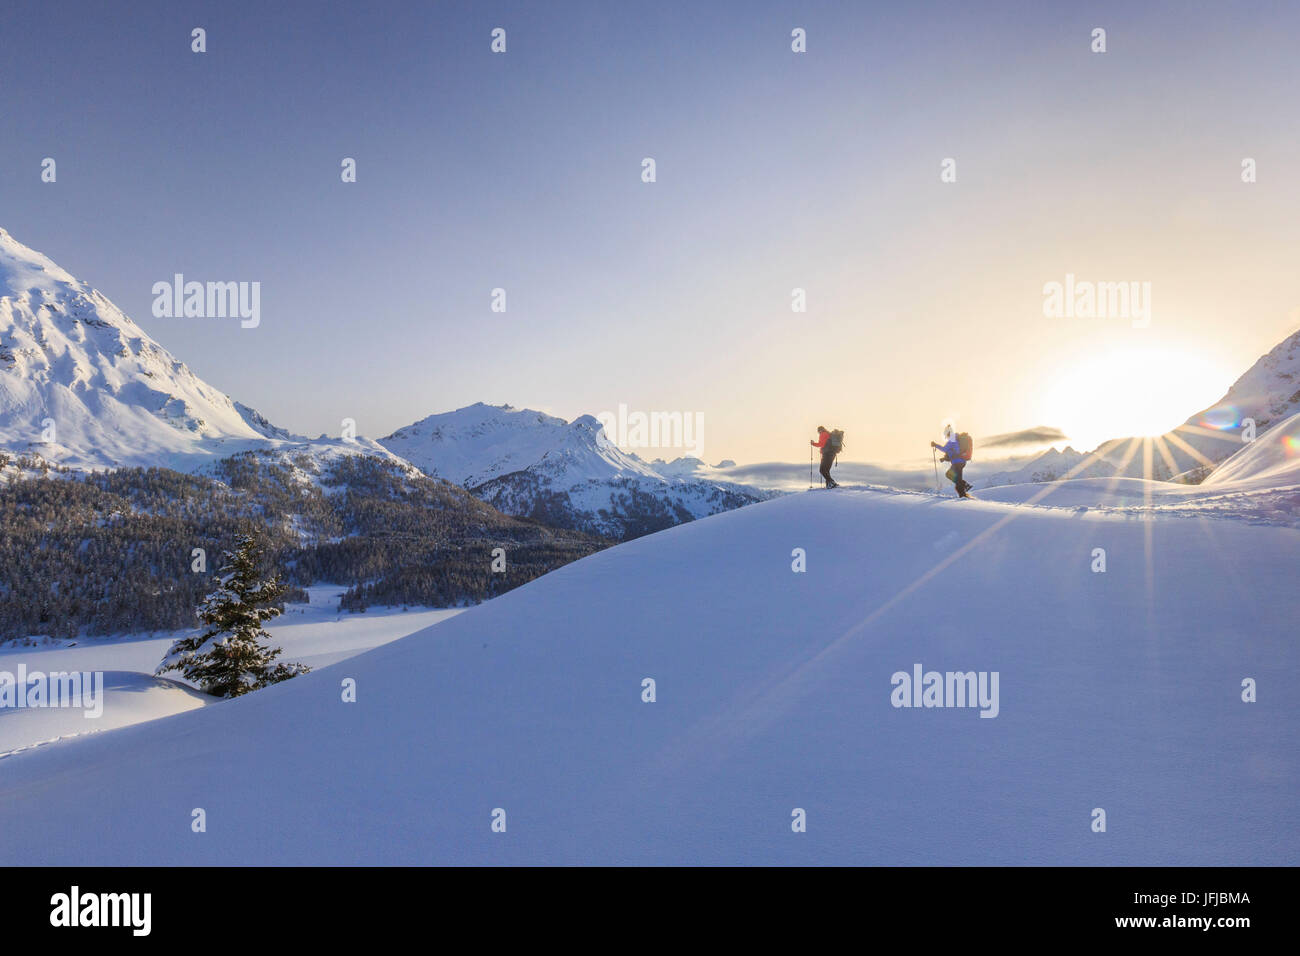 Escursioni con le racchette da neve avventura nella neve profonda dopo una nevicata oltre i laghi ghiacciati di Engadina, nel Canton Grigioni, Maloja Pass, Engadina, Svizzera, Europa Foto Stock